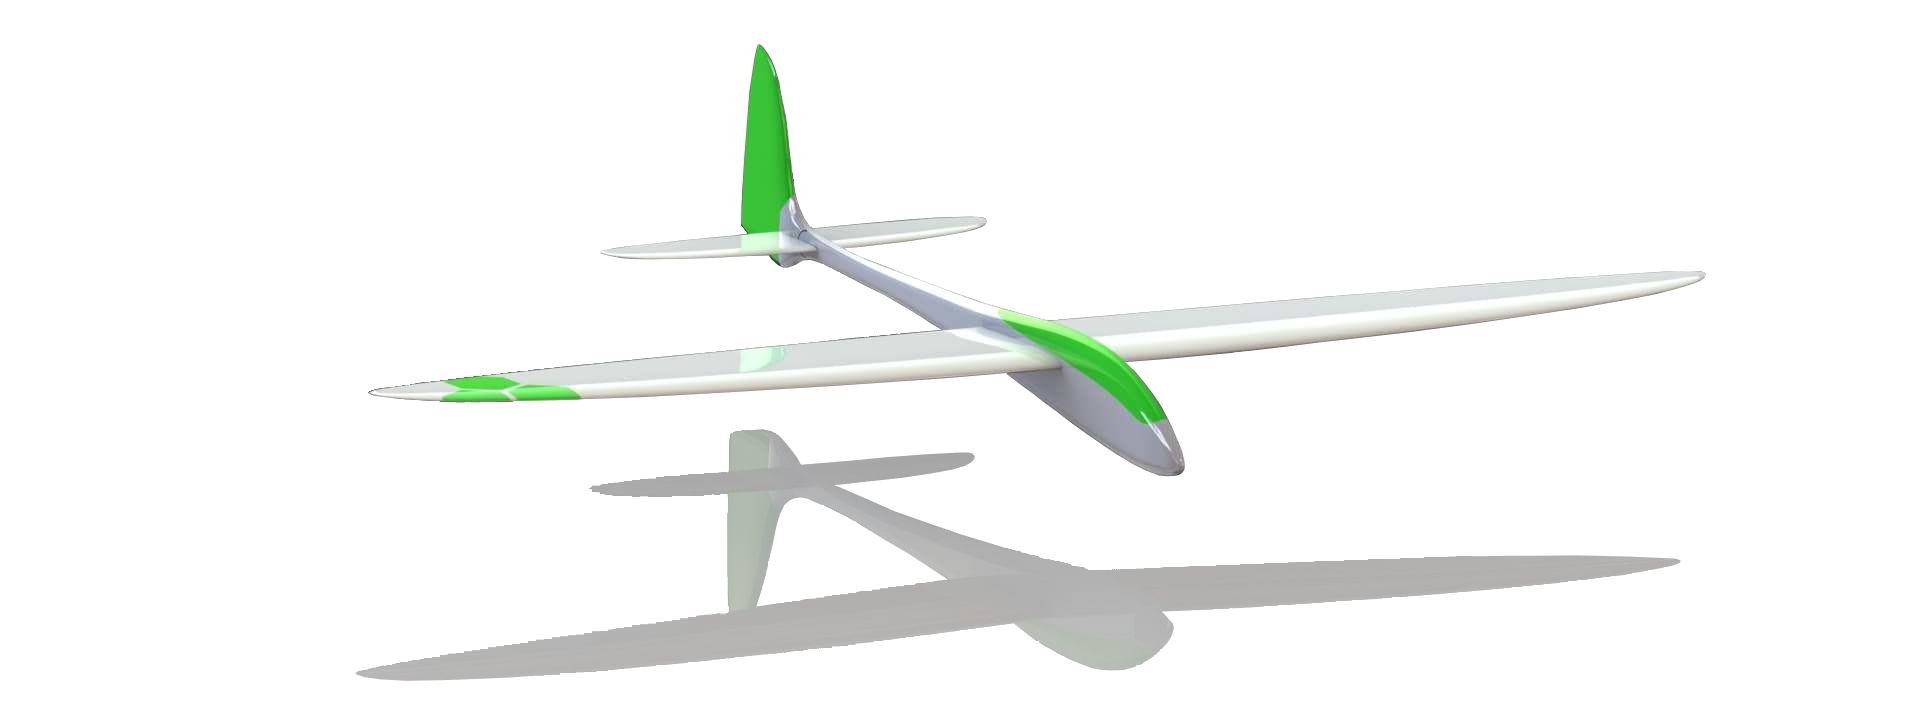 Planeur d'avion RC - VGEBY - Modèle Collision Résistance Glide